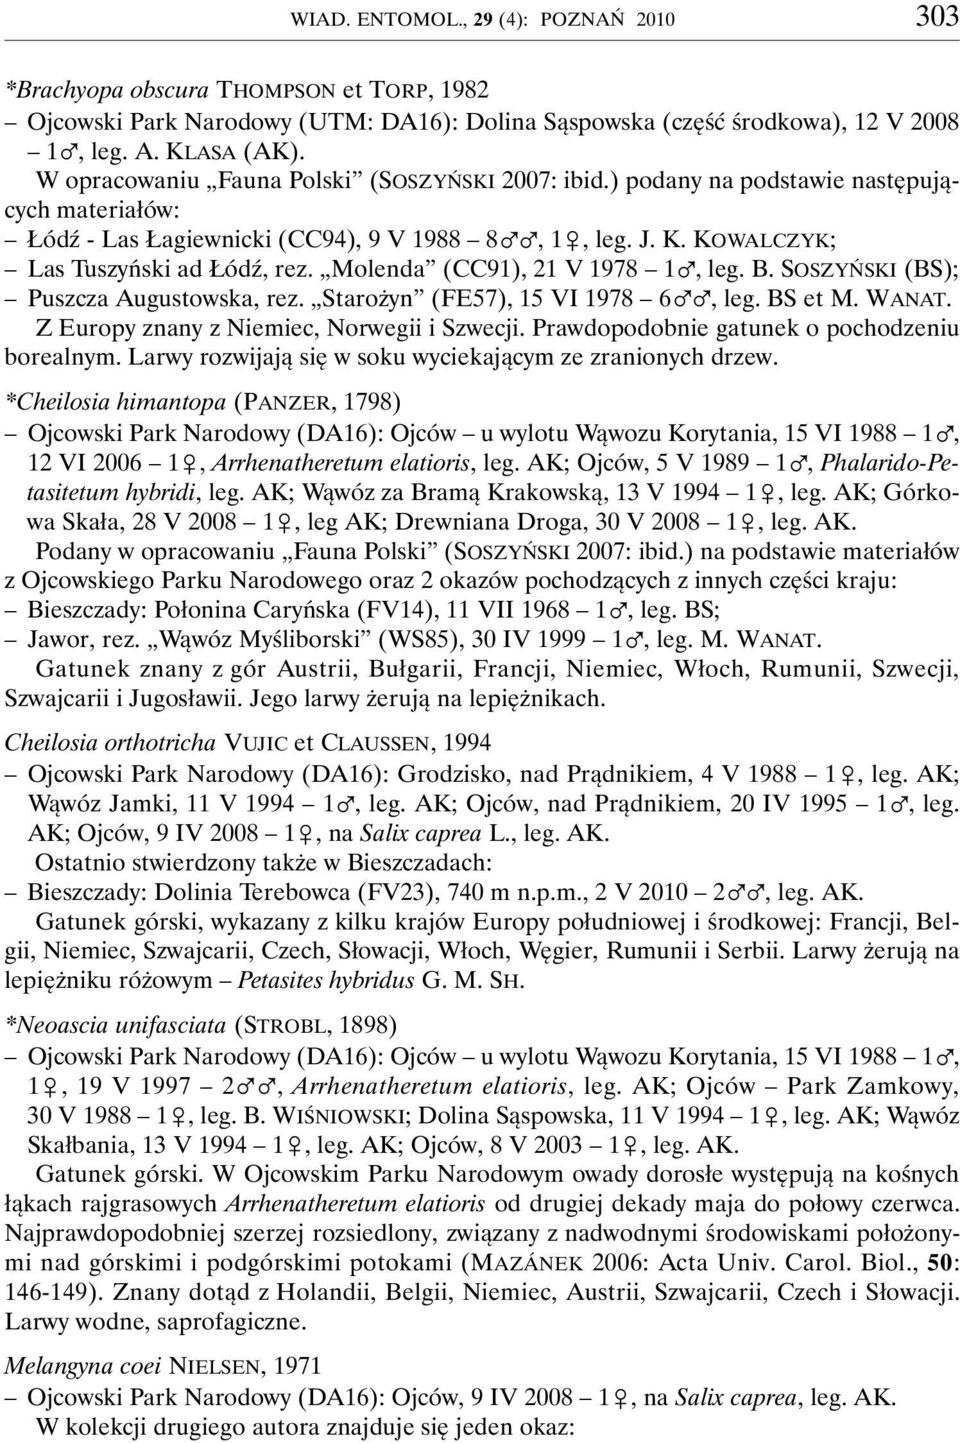 Molenda (CC91), 21 V 1978 1%, leg. B. SOSZYŃSKI (BS); Puszcza Augustowska, rez. Starożyn (FE57), 15 VI 1978 6%%, leg. BS et M. WANAT. Z Europy znany z Niemiec, Norwegii i Szwecji.